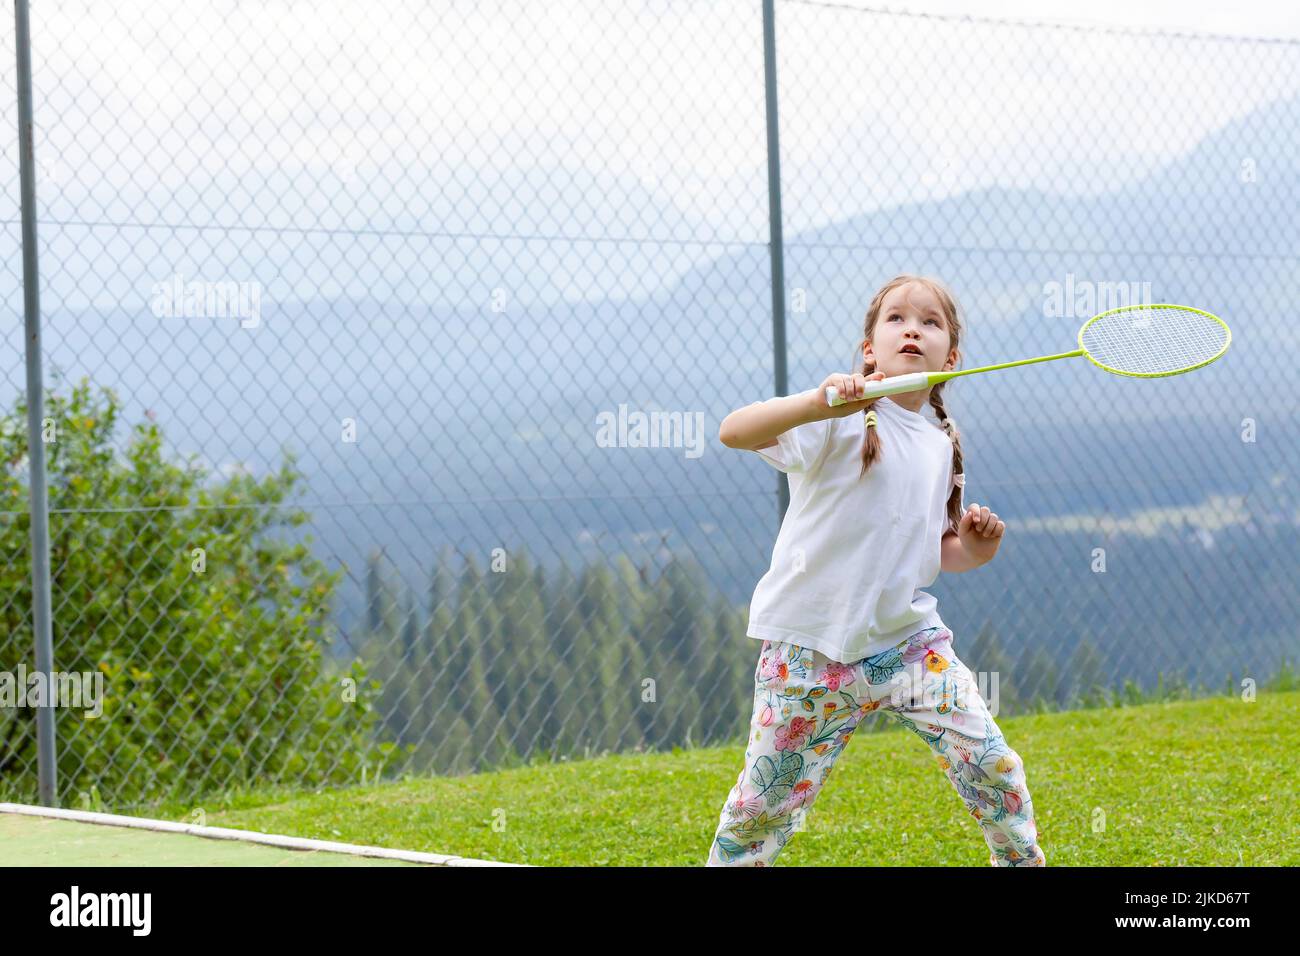 Glücklich sportliche Grundschulalter Kind, Mädchen spielen Badminton im Freien Action shot, Copy Space, eine Person. Kinder und Sport gesunde Lebensweise und Stockfoto